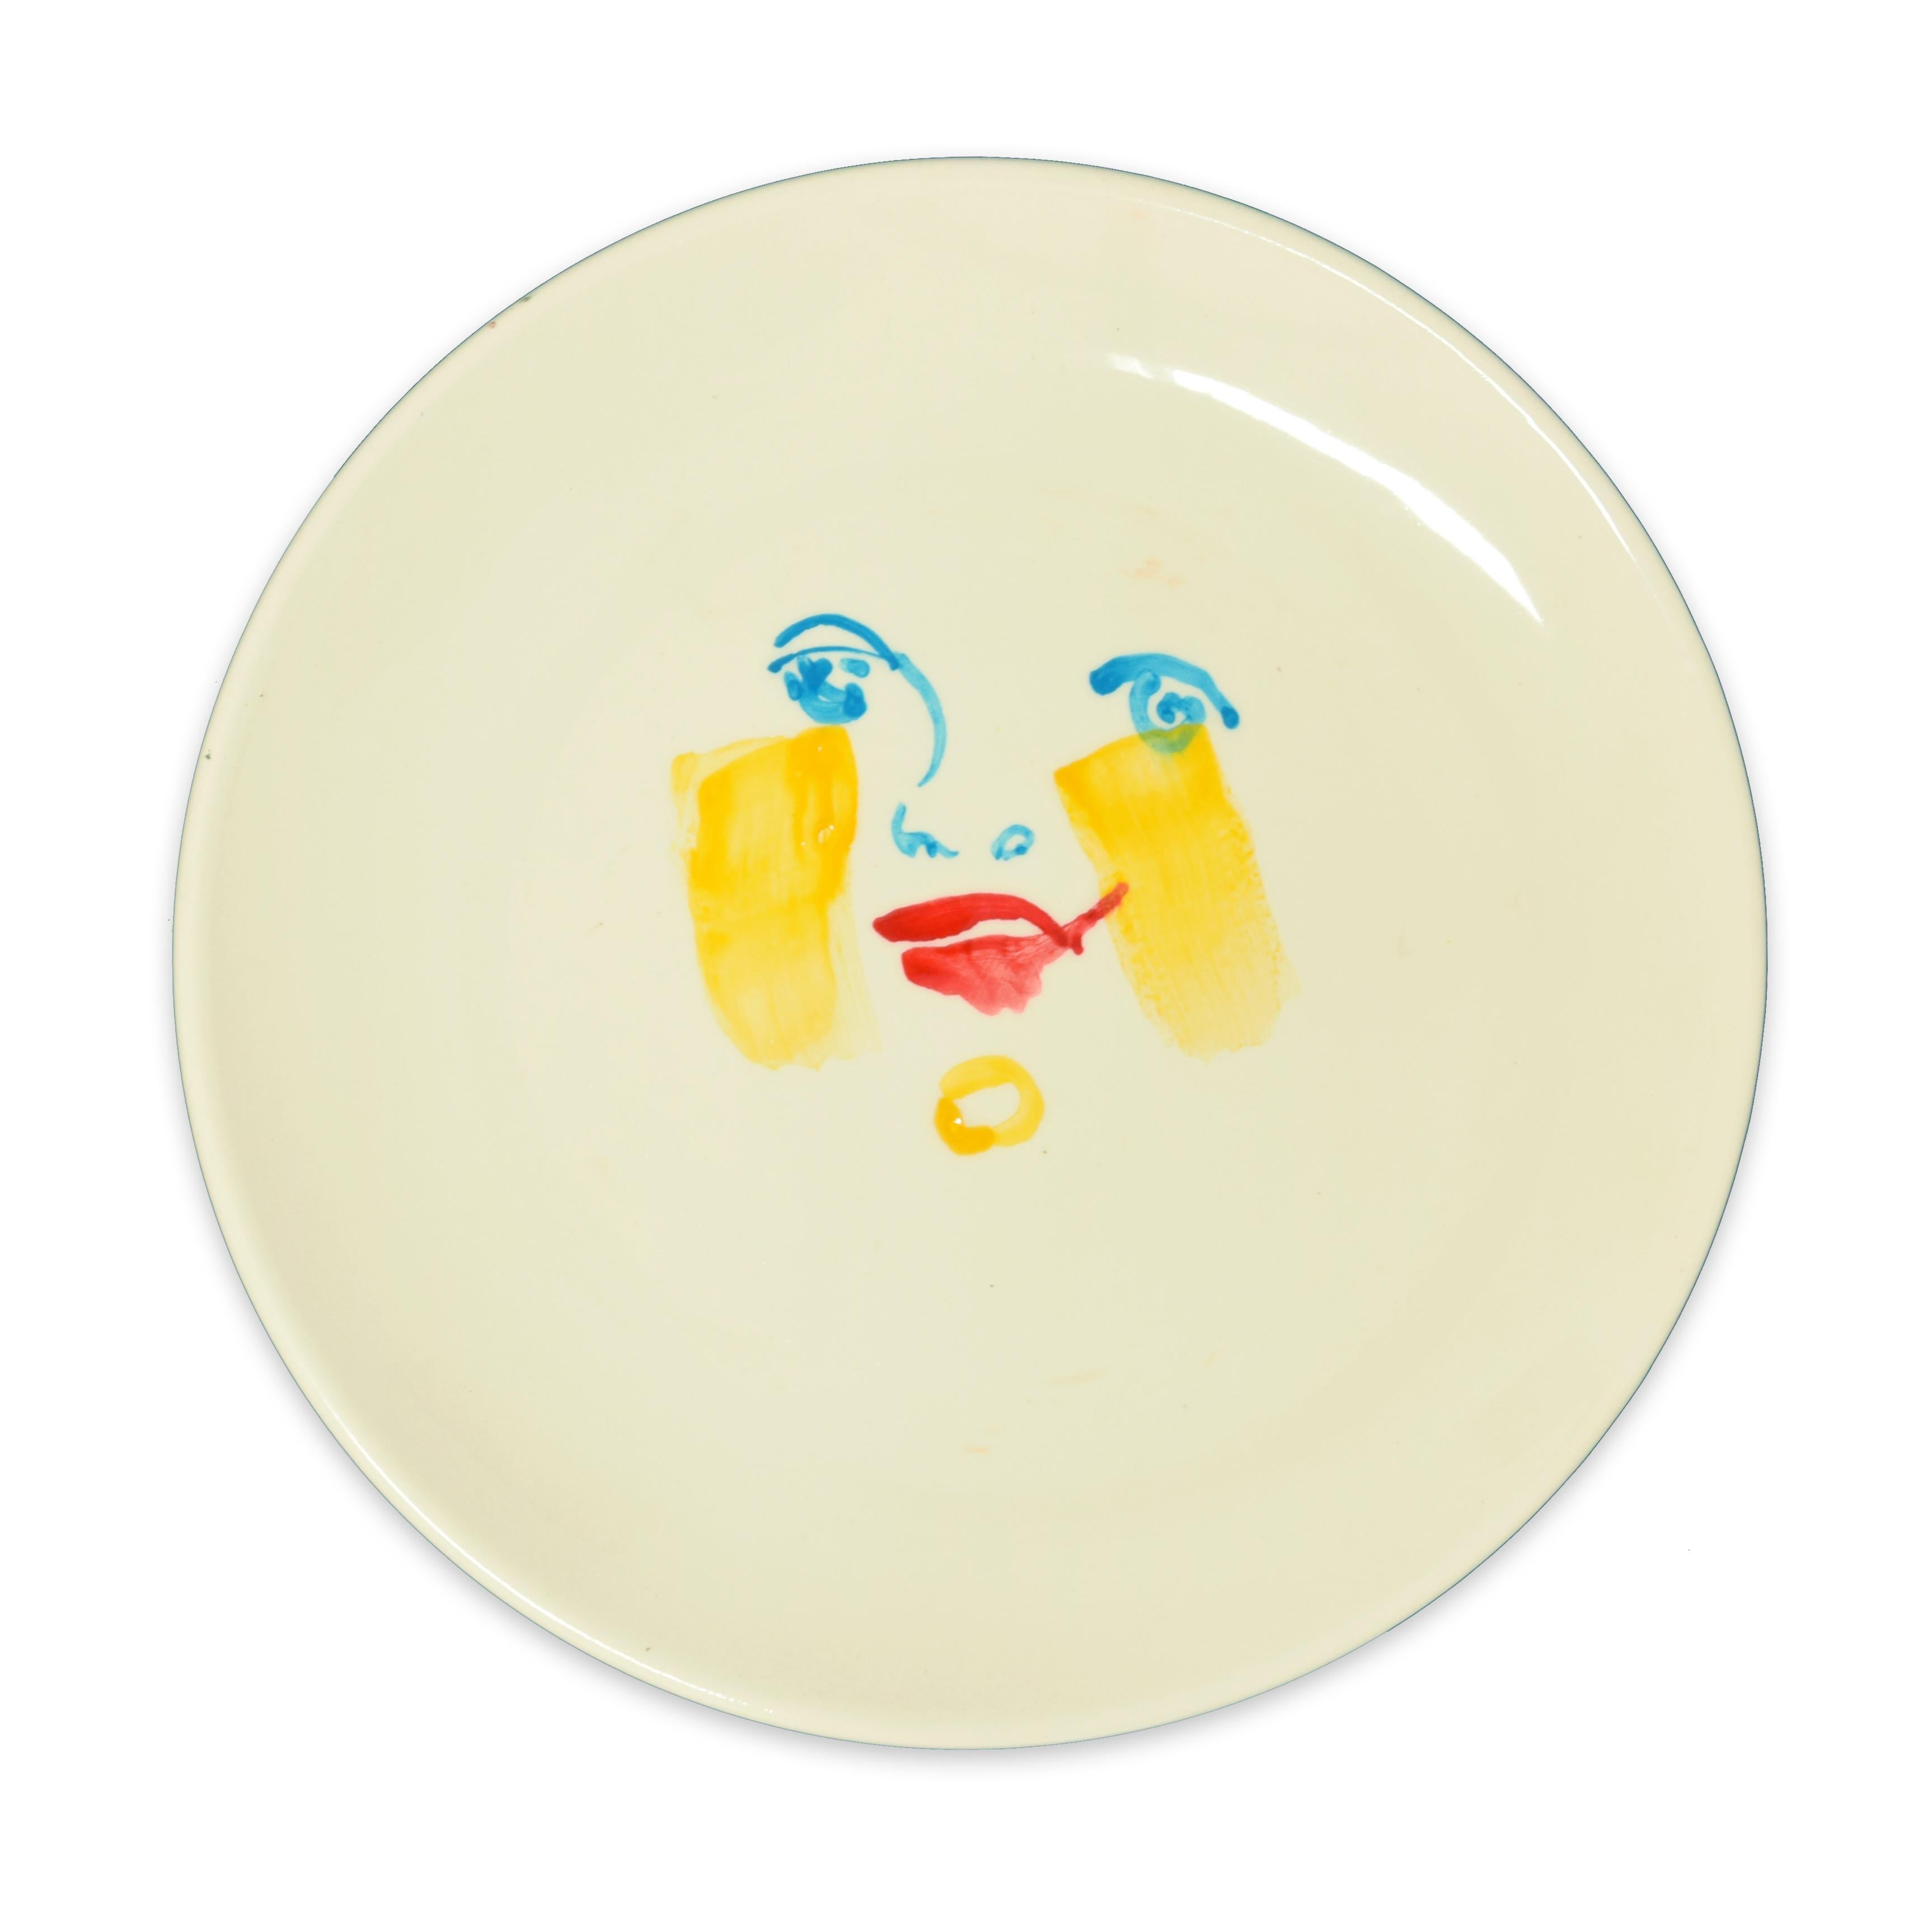 Yellow Brush - Hand-made Flat Ceramic Dish by A. Kurakina - 2019